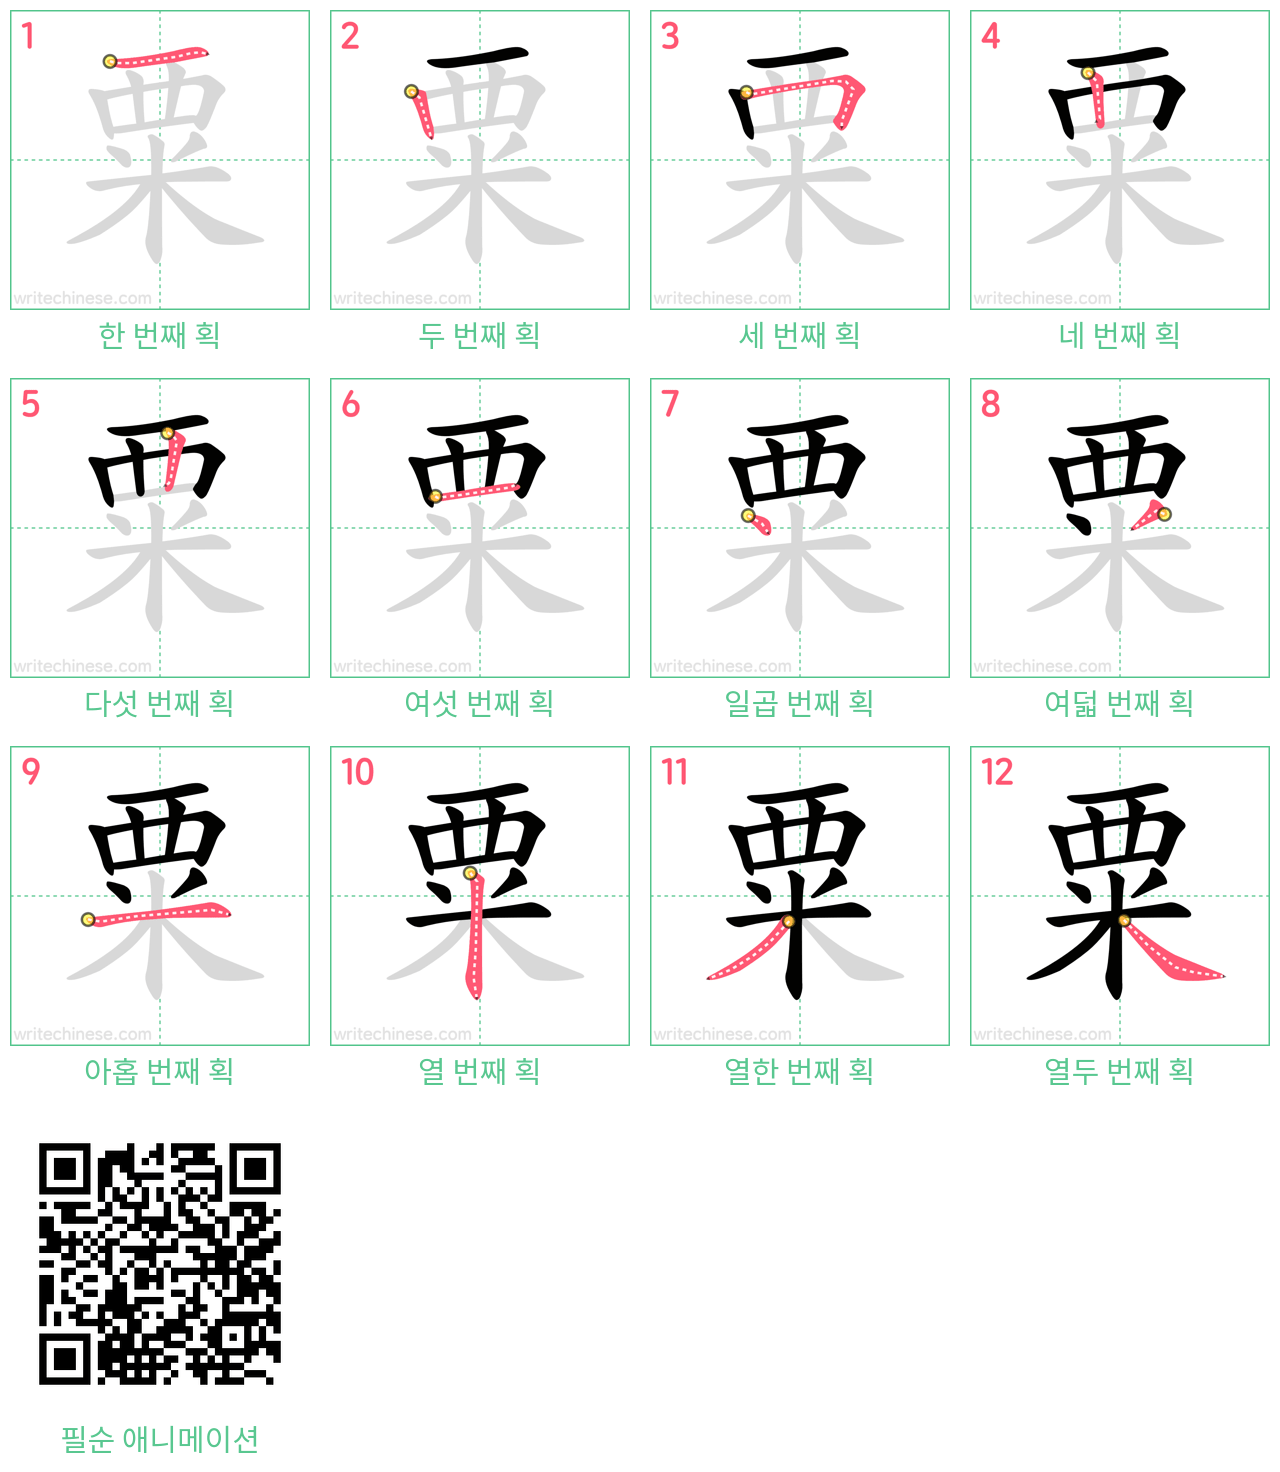 粟 step-by-step stroke order diagrams